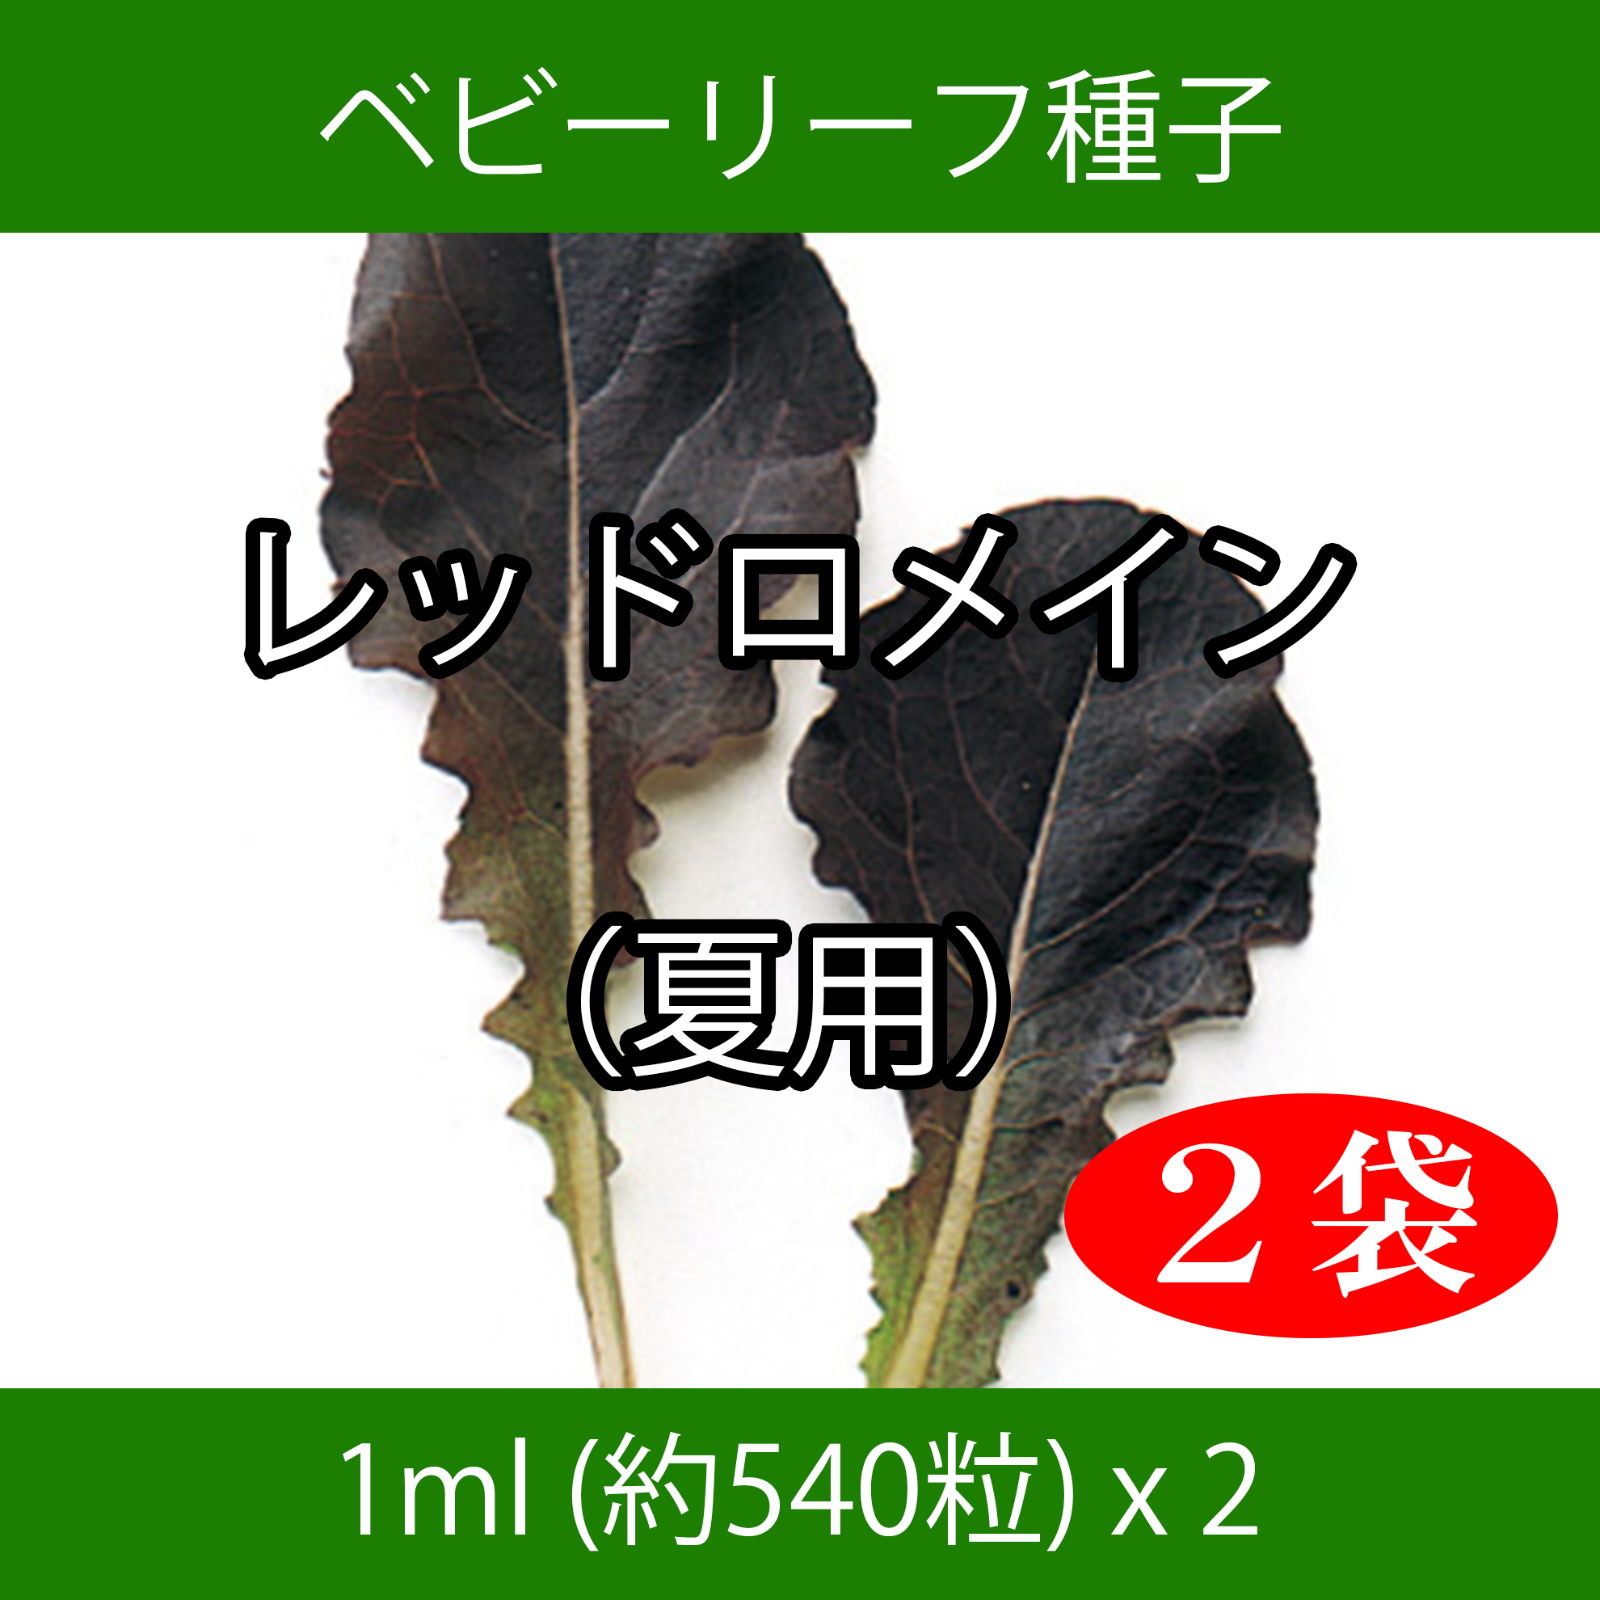 送料無料激安祭 野菜種子 EAO 沖縄小型冬瓜 5粒 x 2袋